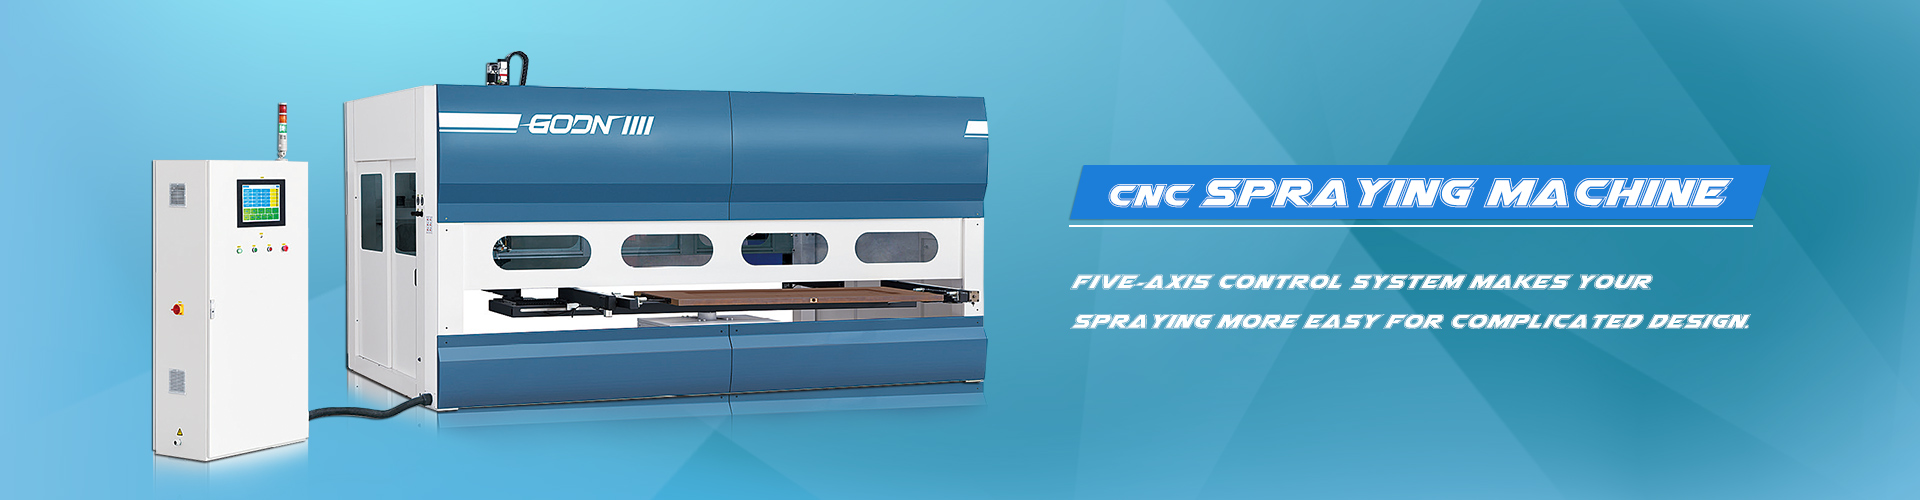 Machine de pulvérisation CNC